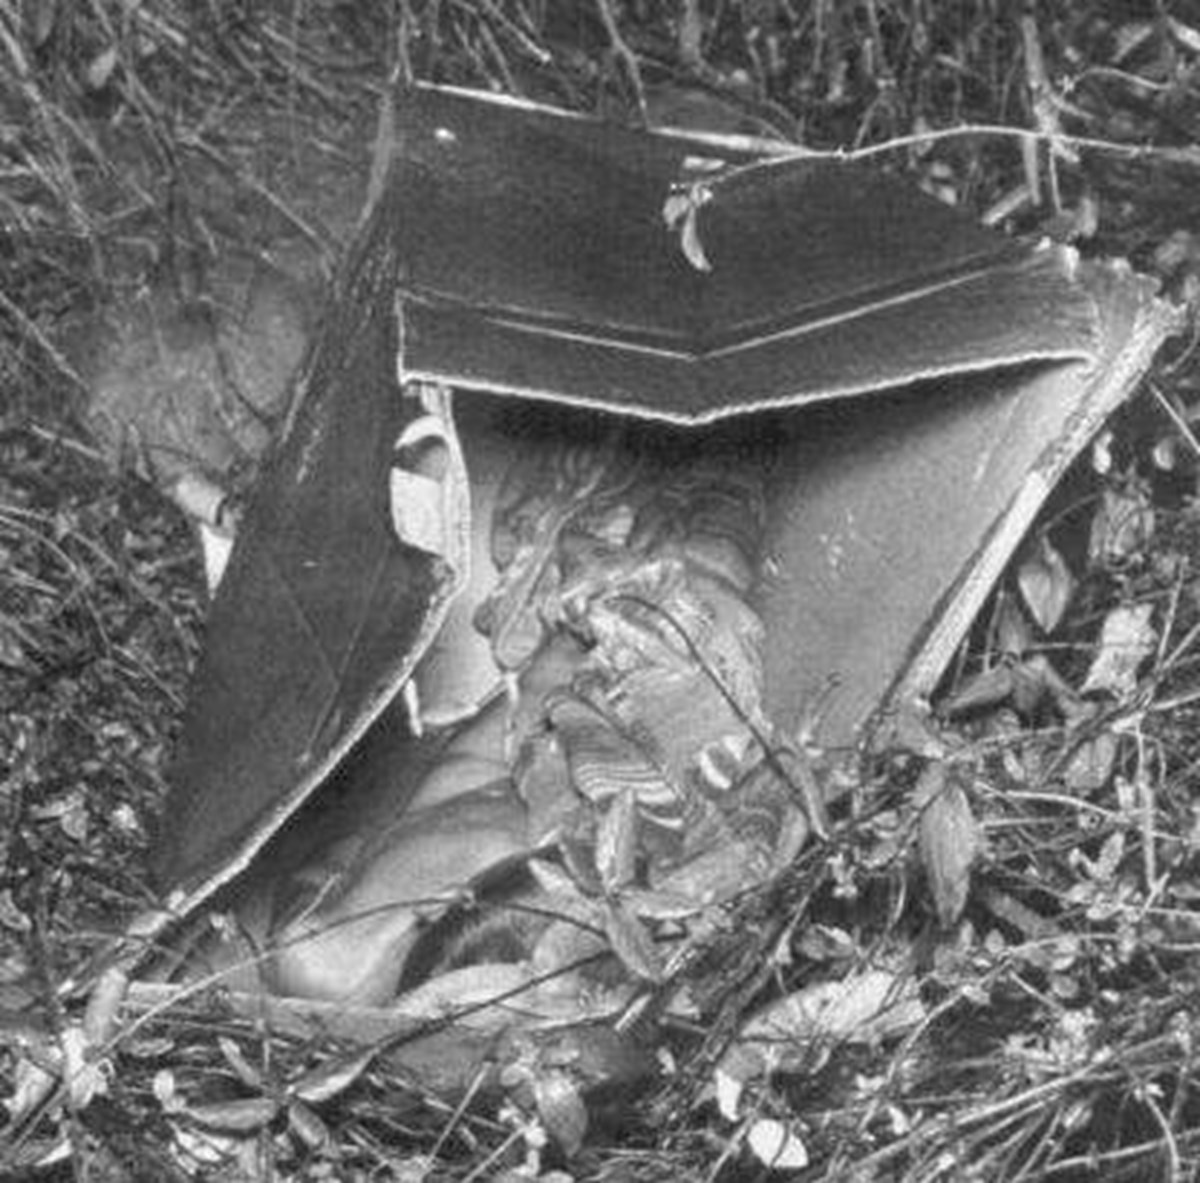 5 yaşındaki çocuğun cesedi 1957 yılında kutu içerisinde bulunmuştu.